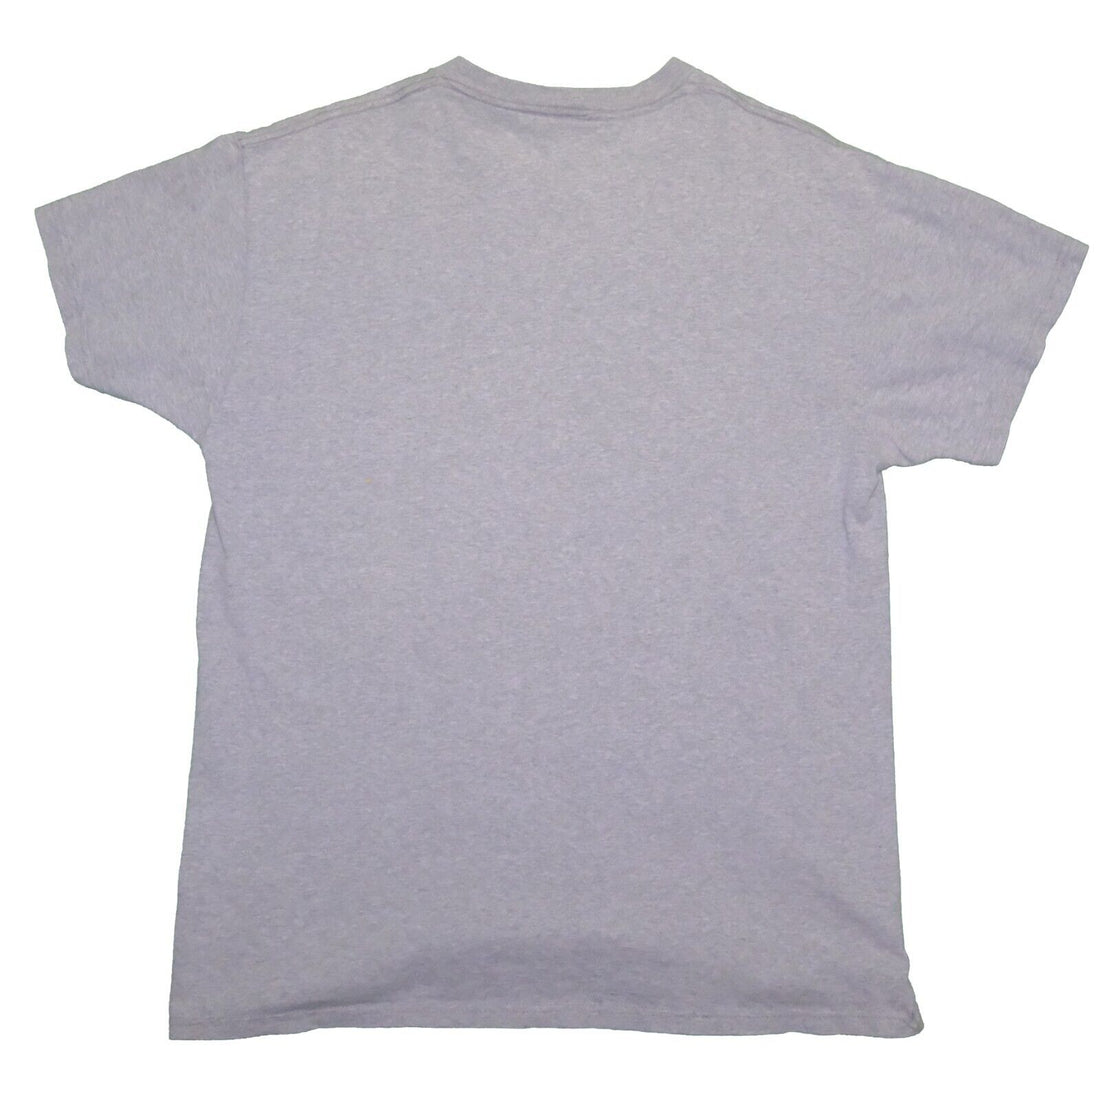 Vintage Tommy Hilfiger Flag T-Shirt Size Large Gray